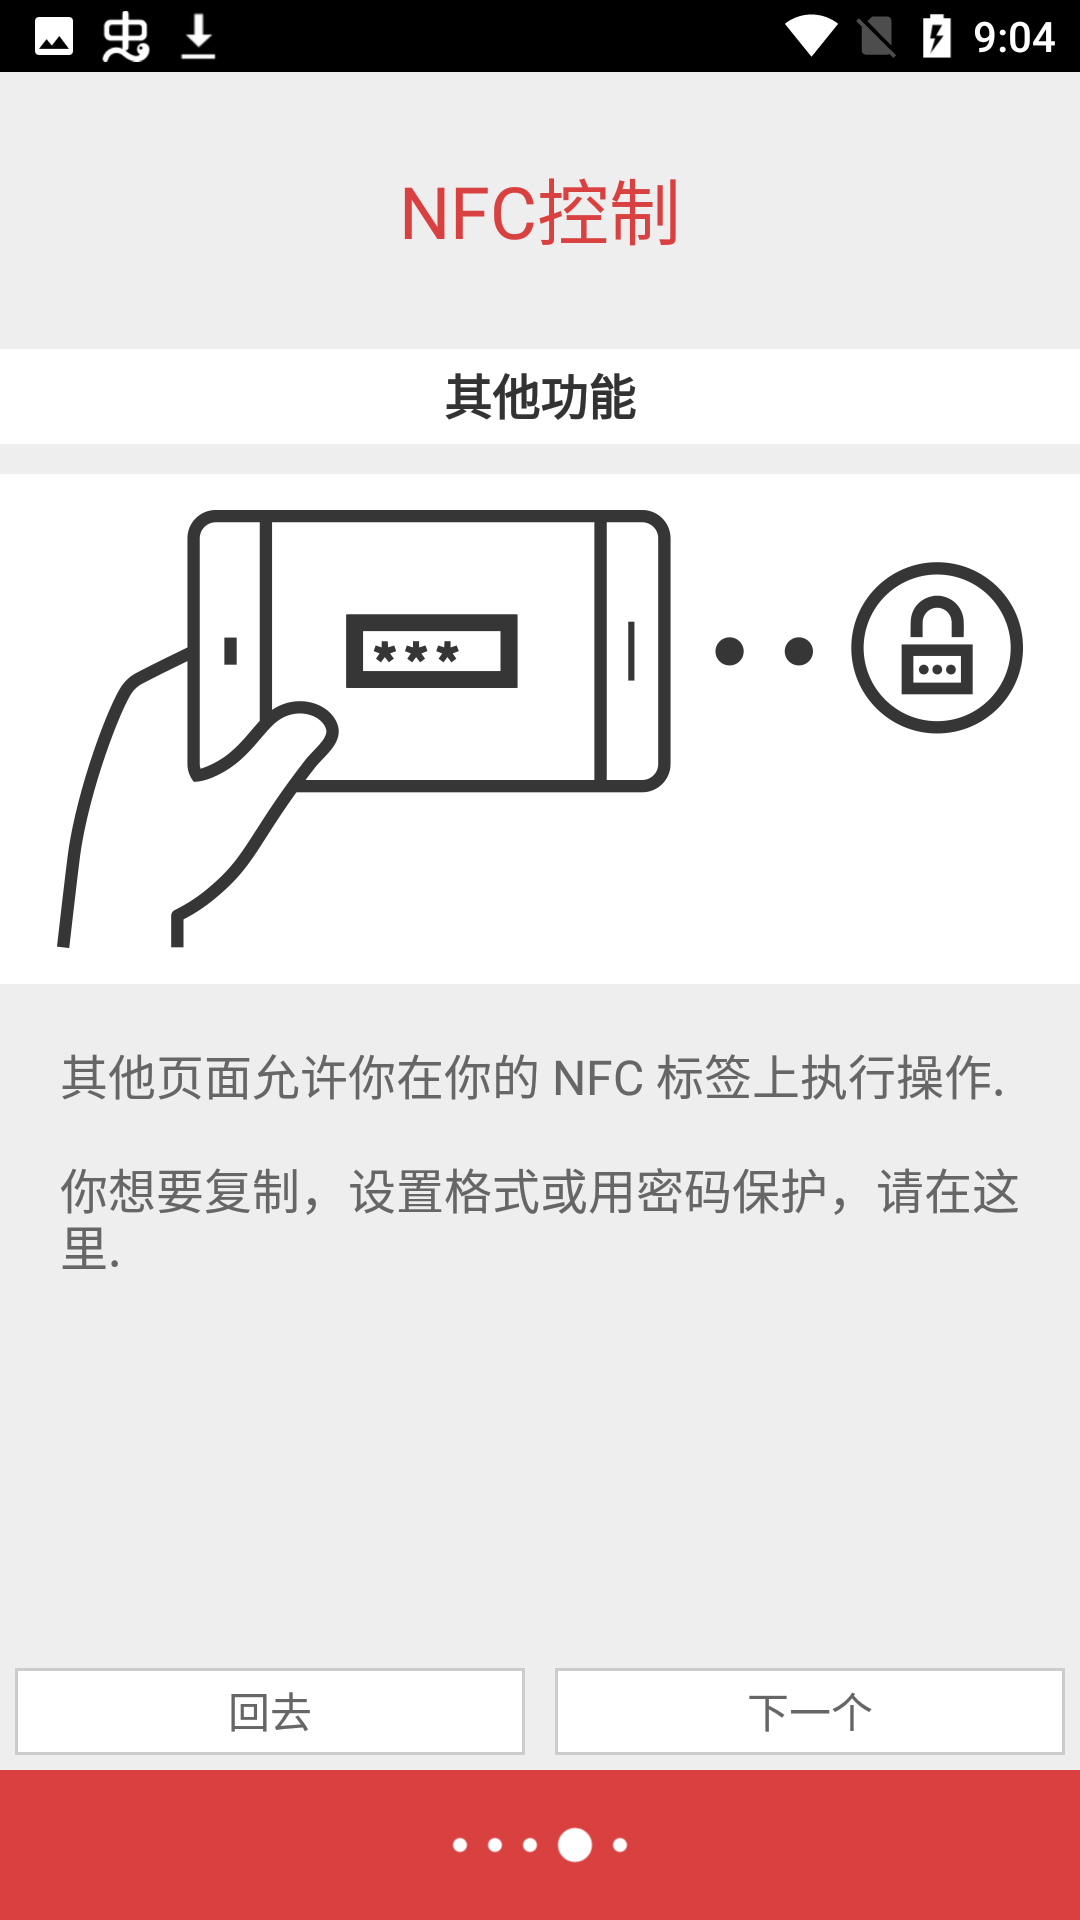 NFC Tools PRO°汾v8.6.1 